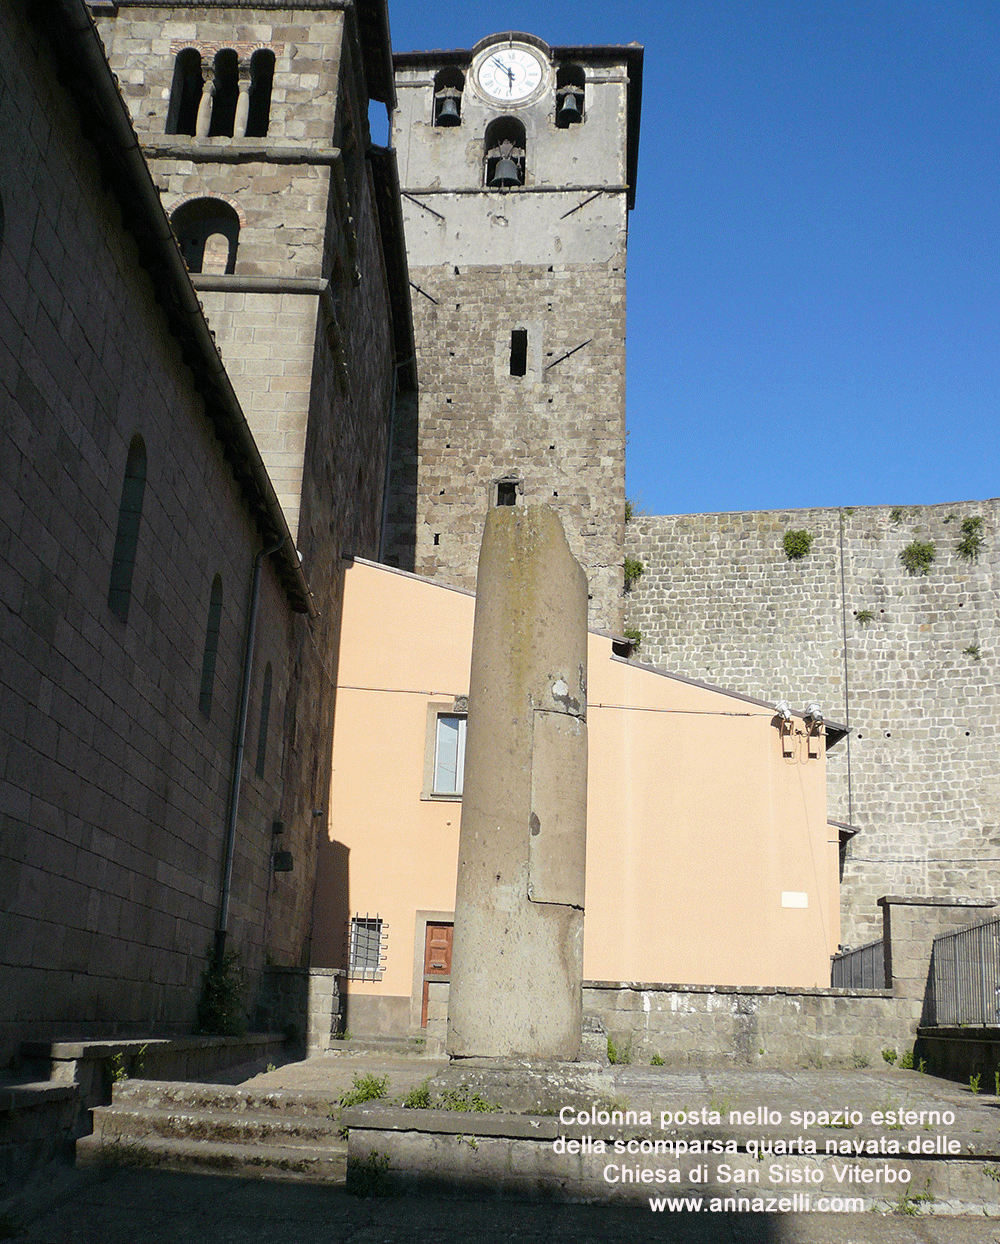 colonna posta nello spazio esterno della scomparsa quarta navata della chiesa di san sisto vieterbo centro storico